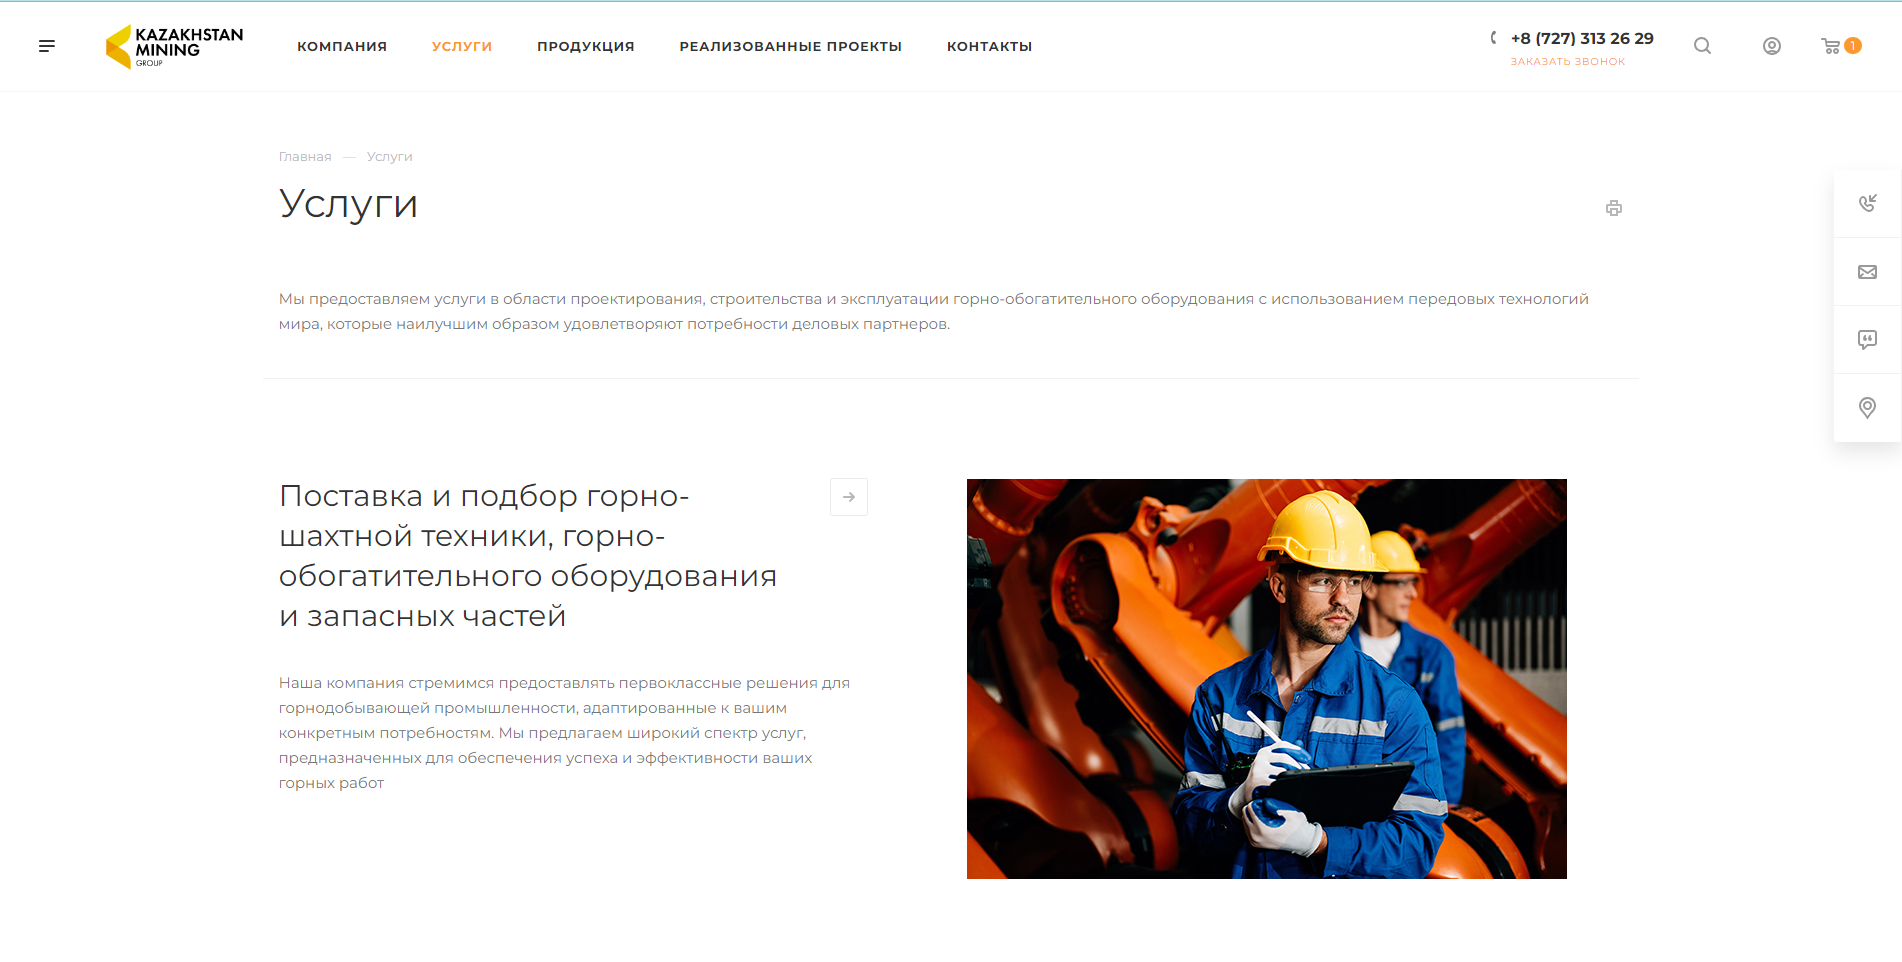 интернет-магазин карьерной, подземной горной техники, горно-обогатительного оборудования и запасных частей too kazakhstan mining group